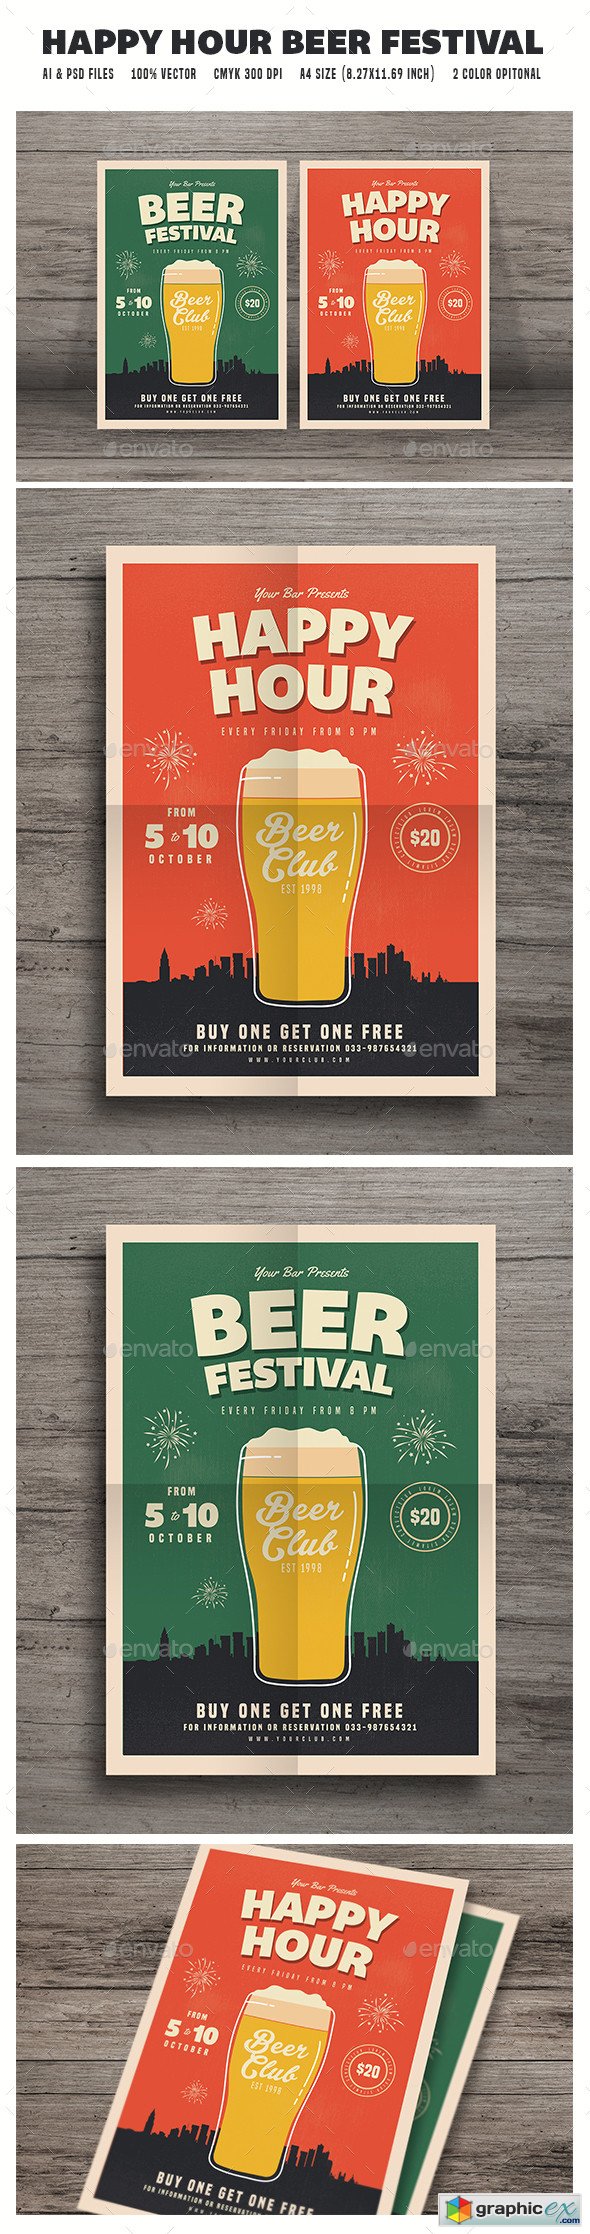 Happy Hour Beer Festival Flyer